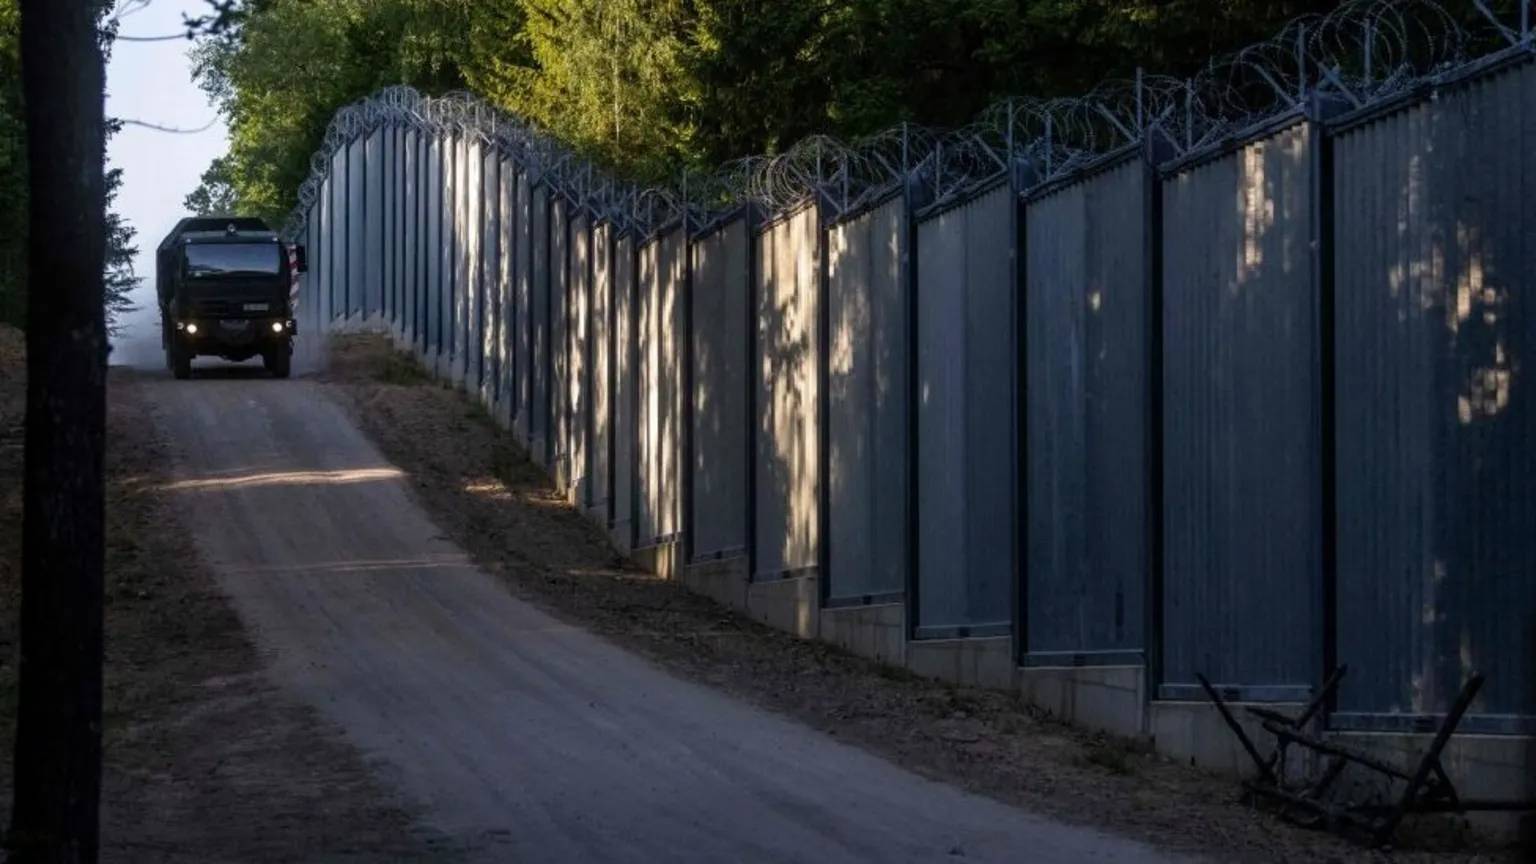 polonya sınırında bir kadın doğum yaptı, yetkililer kadının sınırdan geri çevrildiği iddialarını yalanladı